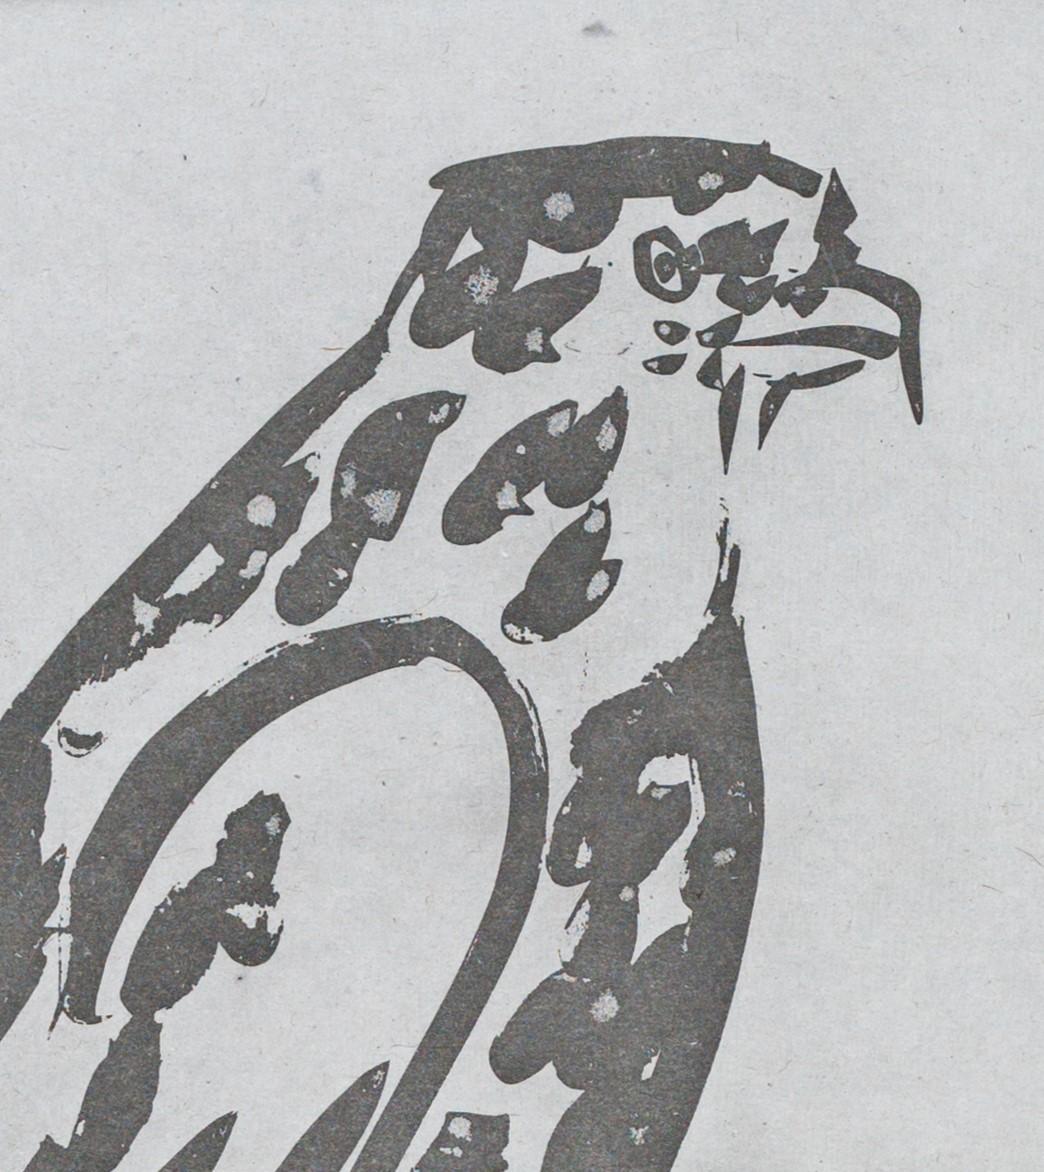 L'épervier est une gravure à l'aquatinte et à la pointe sèche sur chine provenant de l'un des exemplaires de luxe de la série Histoire naturelle - Textes de Buffon, publiée par Picasso en 1942. La taille de l'image est de 10,5 x 8 pouces, elle n'est